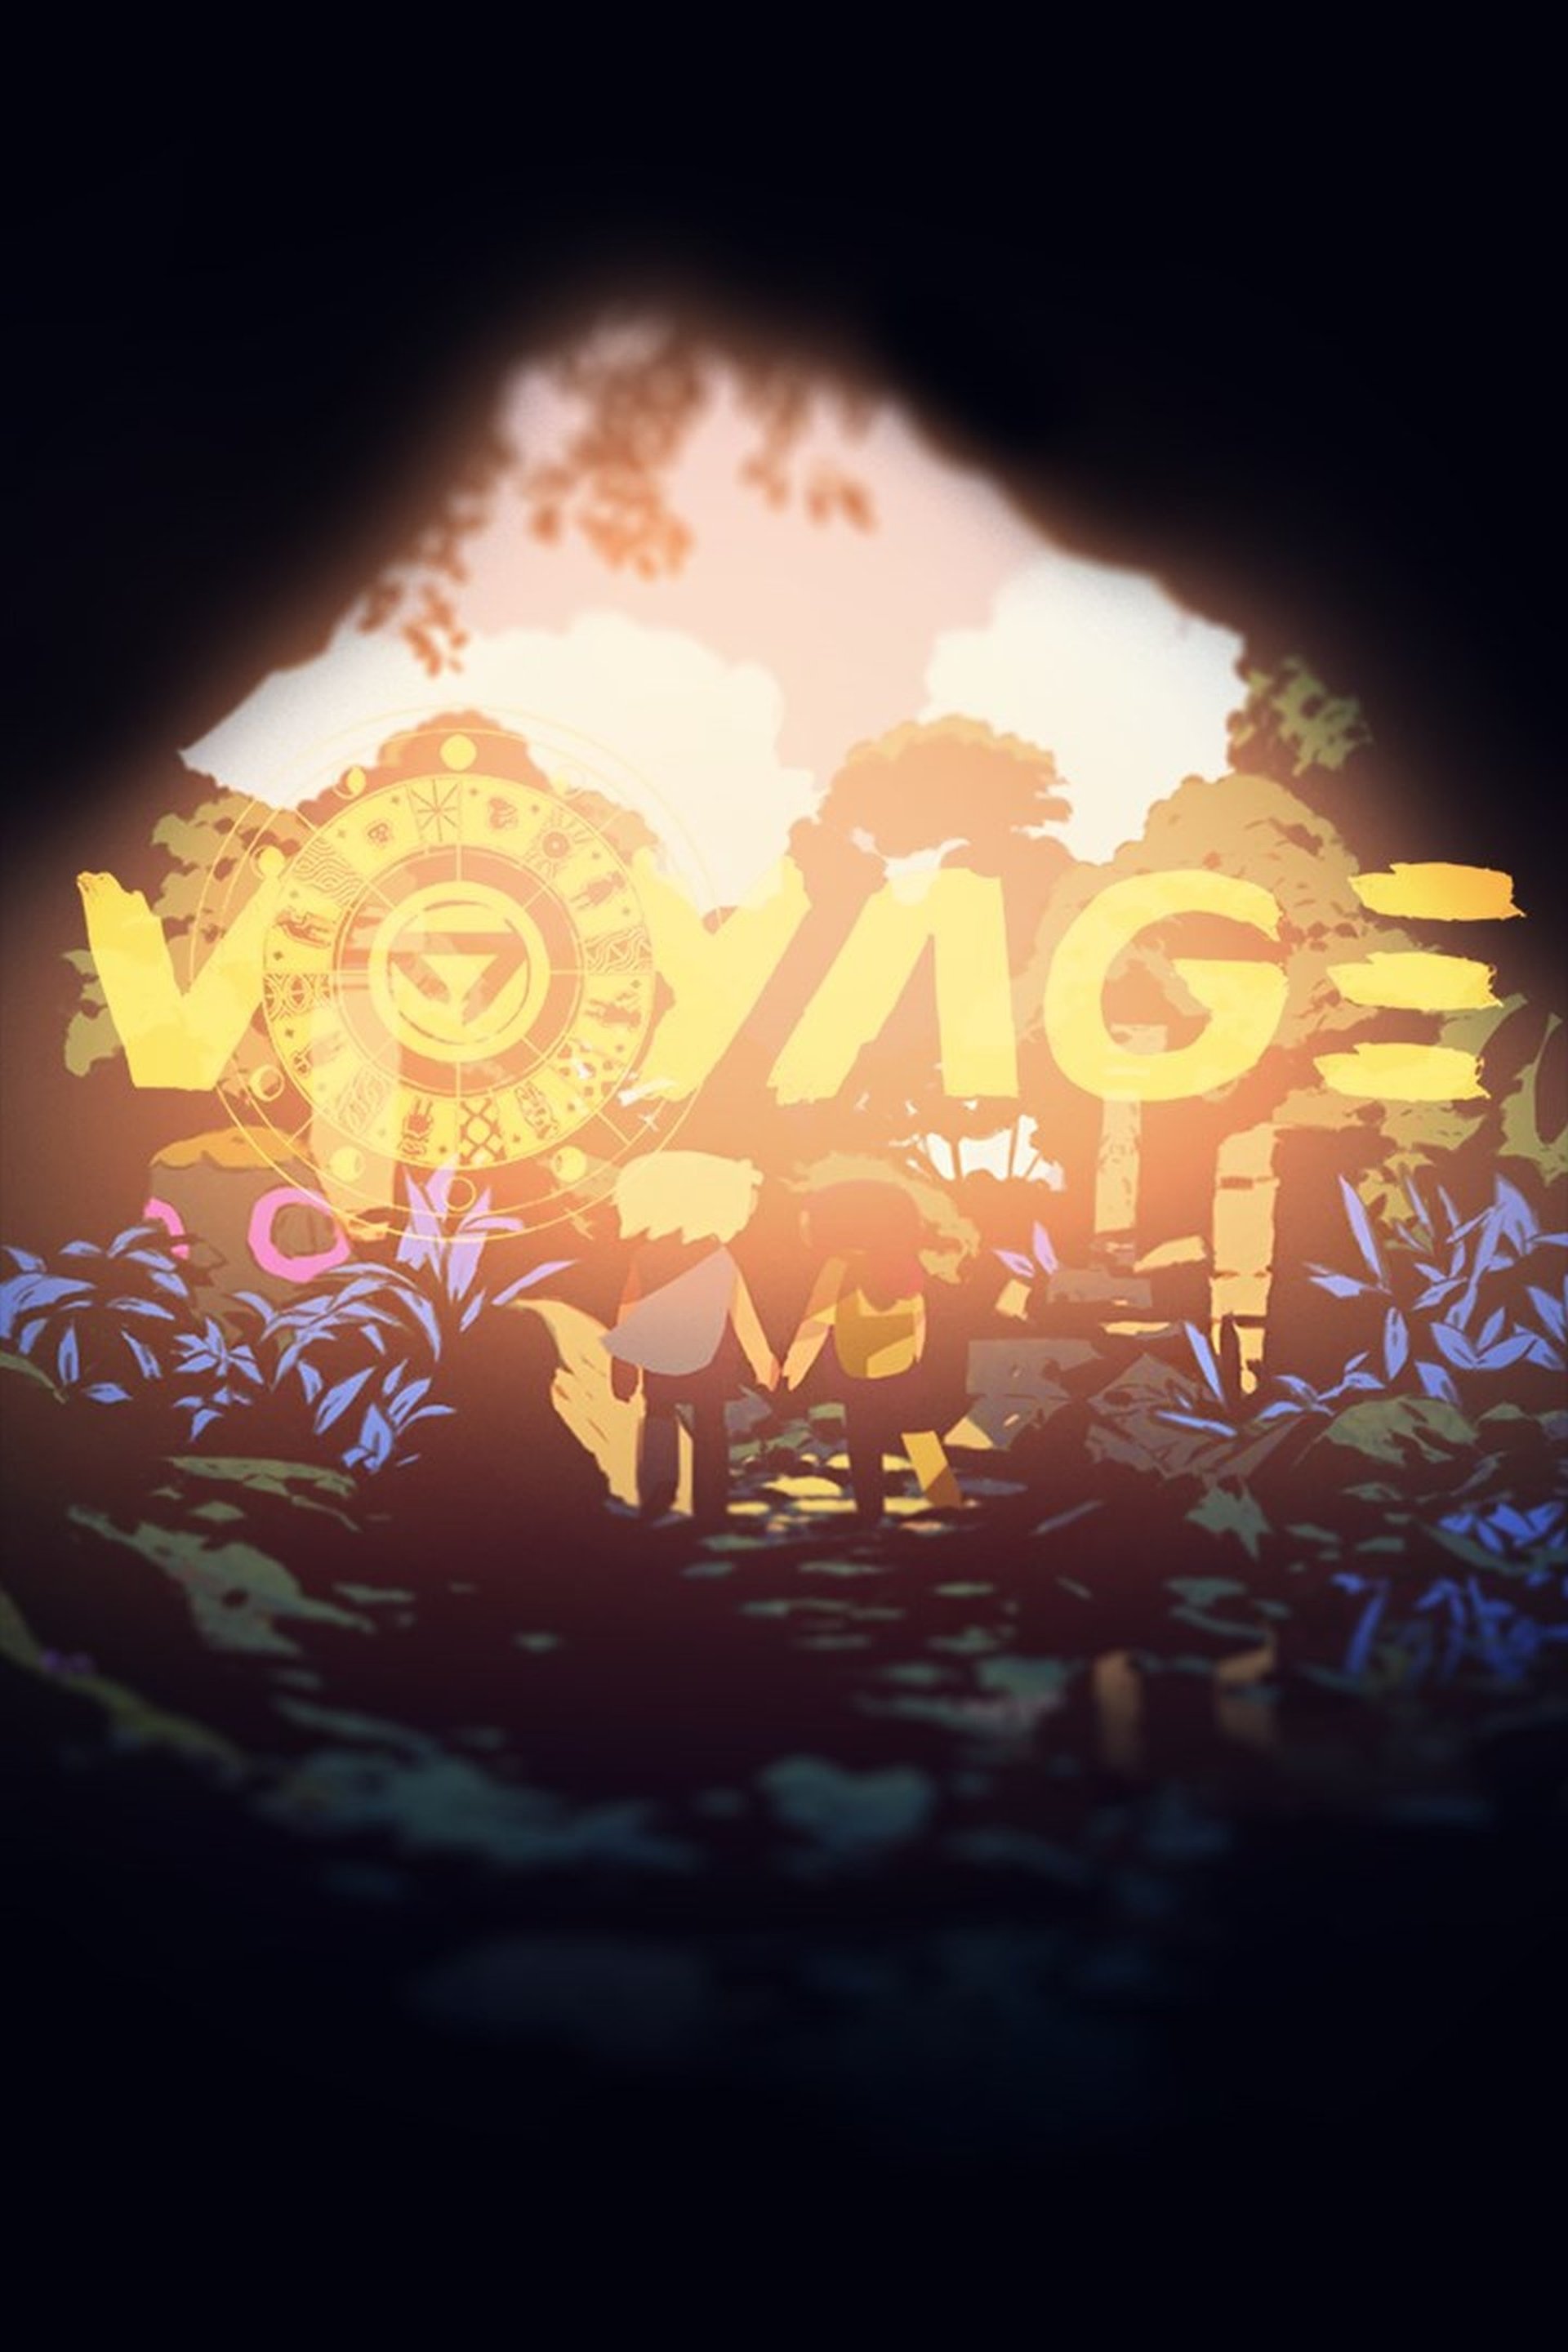 Next Week on Xbox: Neue Spiele vom 8. bis zum 12. August: Voyage